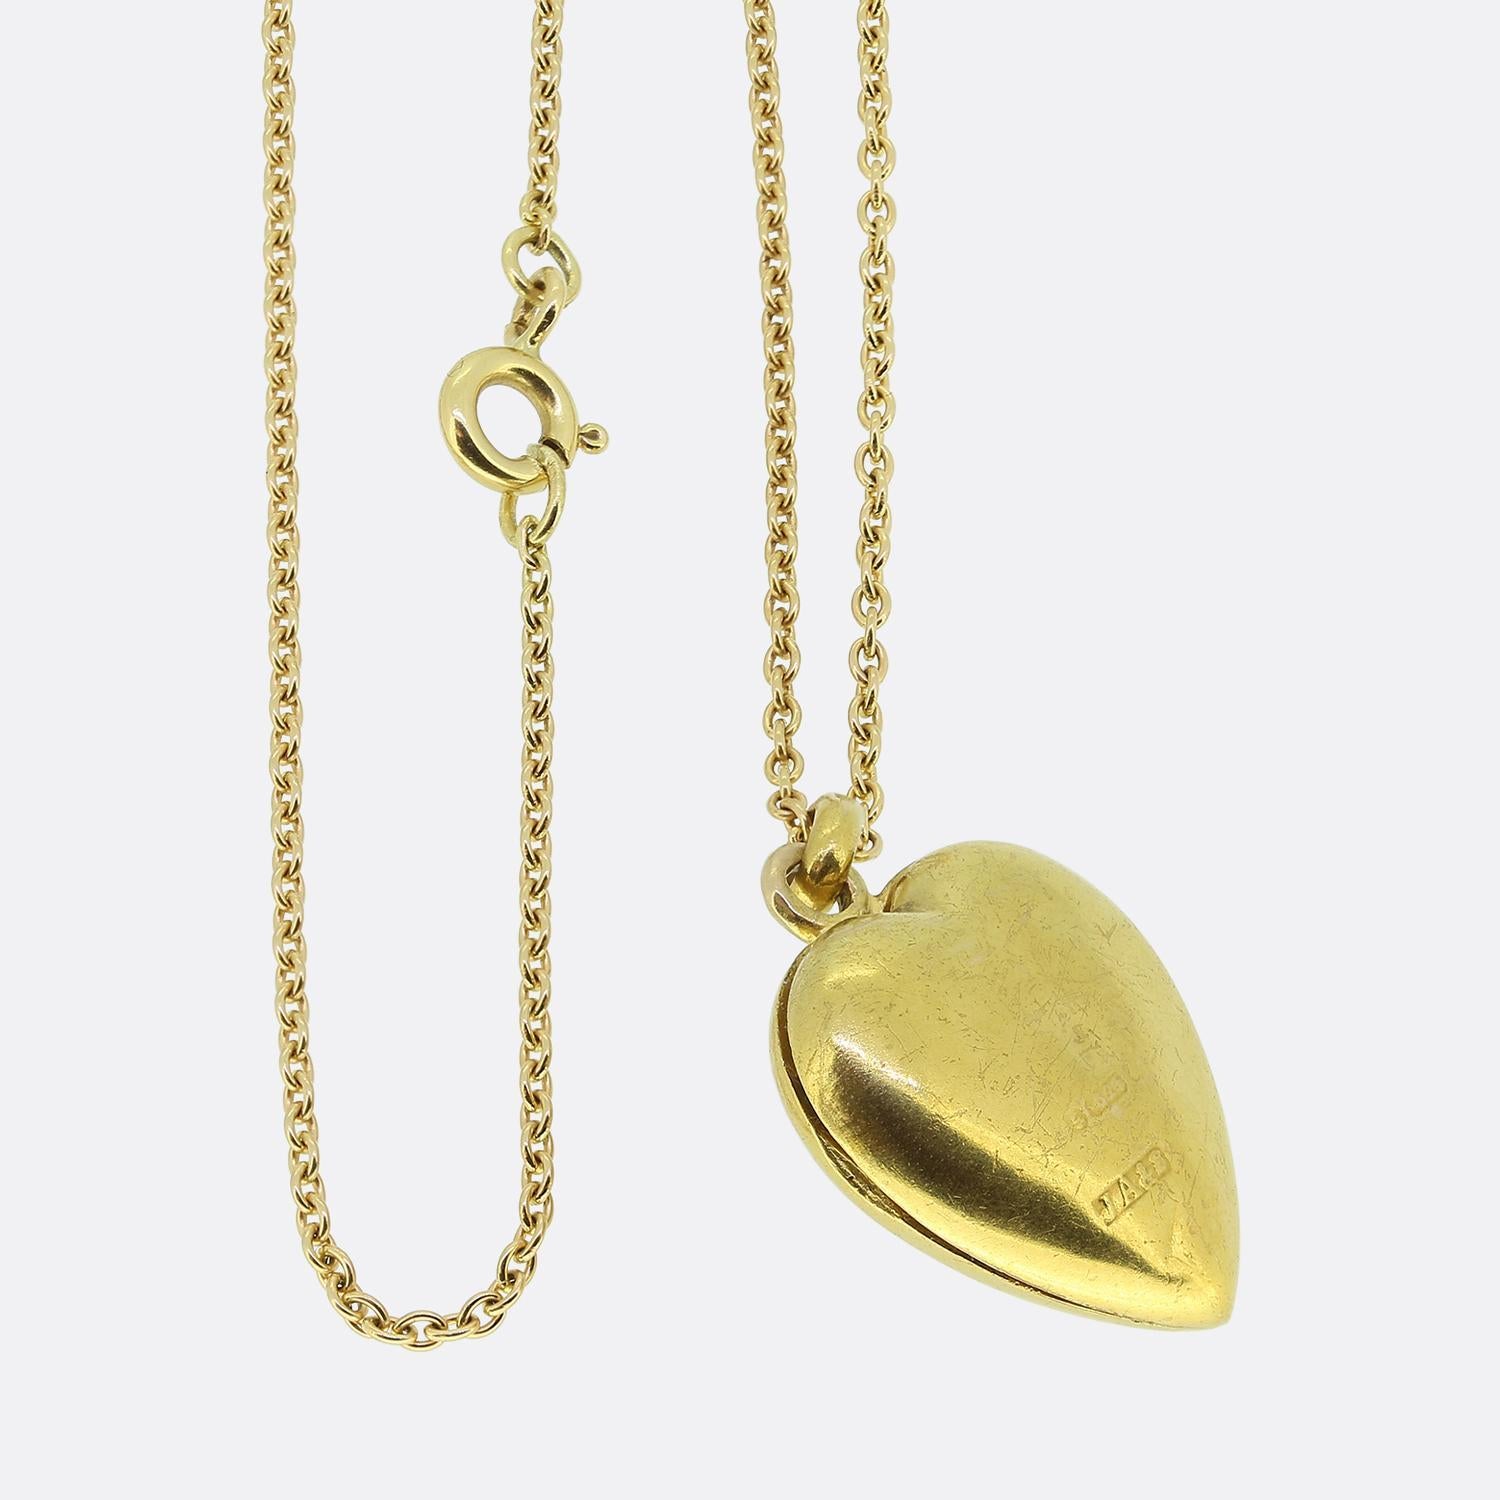 Nous avons ici un magnifique collier pendentif en forme de médaillon serti de diamants. Ce pendentif antique a été réalisé en or jaune 15ct en forme de petit cœur d'amour et serti d'un duo de diamants taillés en rose. Cette pierre focale est ensuite